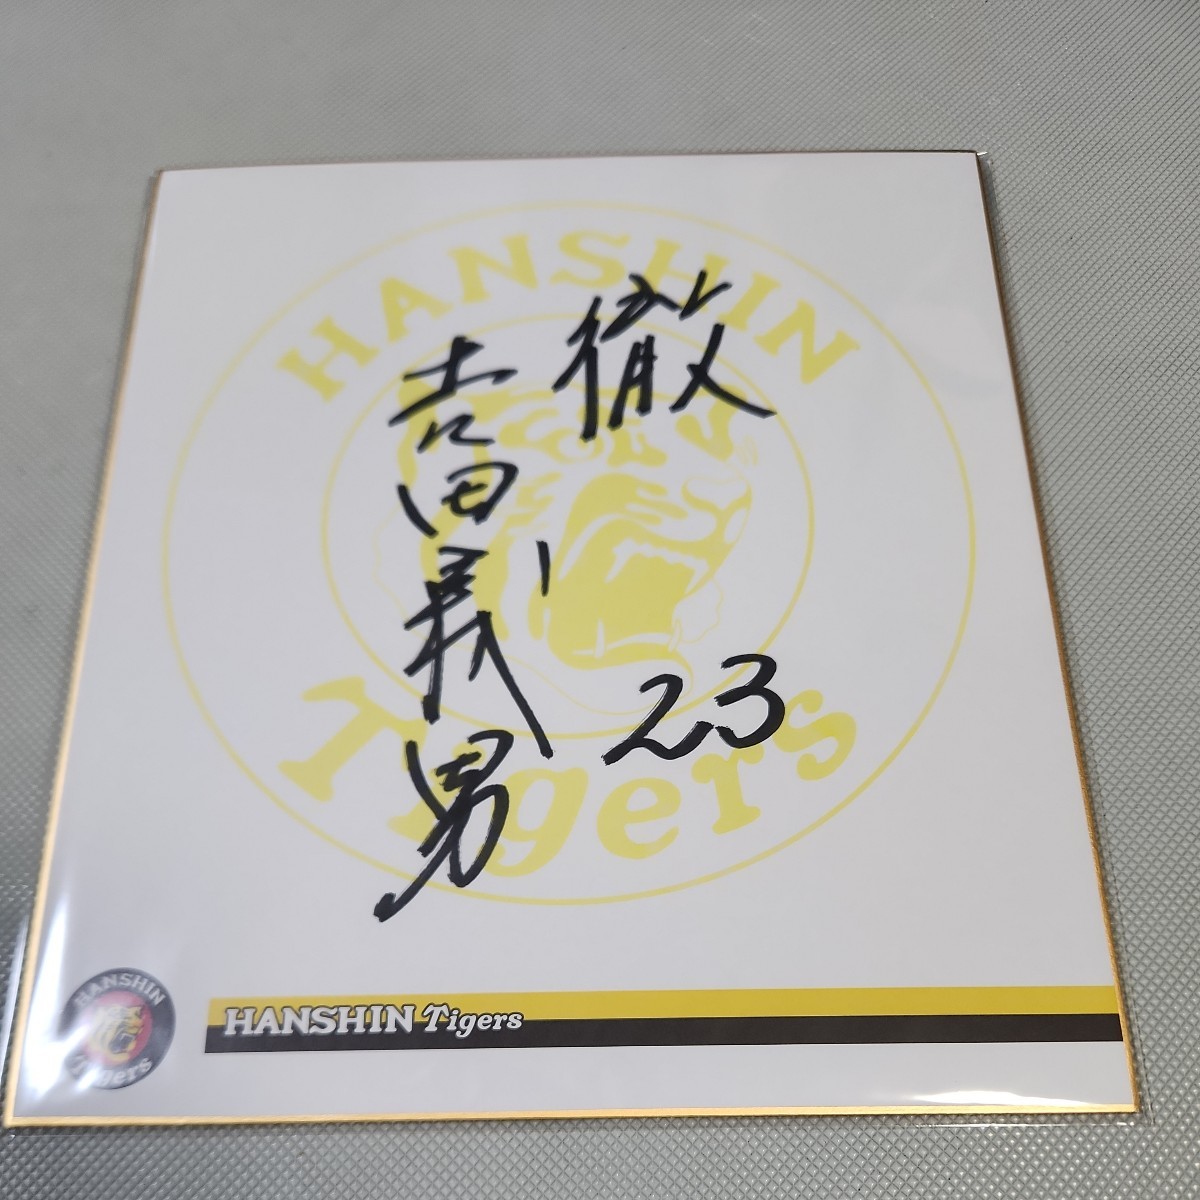 Hanshin Tigers Yoshio Yoshida signiertes Team-Farbpapier, Baseball, Souvenir, Ähnliche Artikel, Zeichen